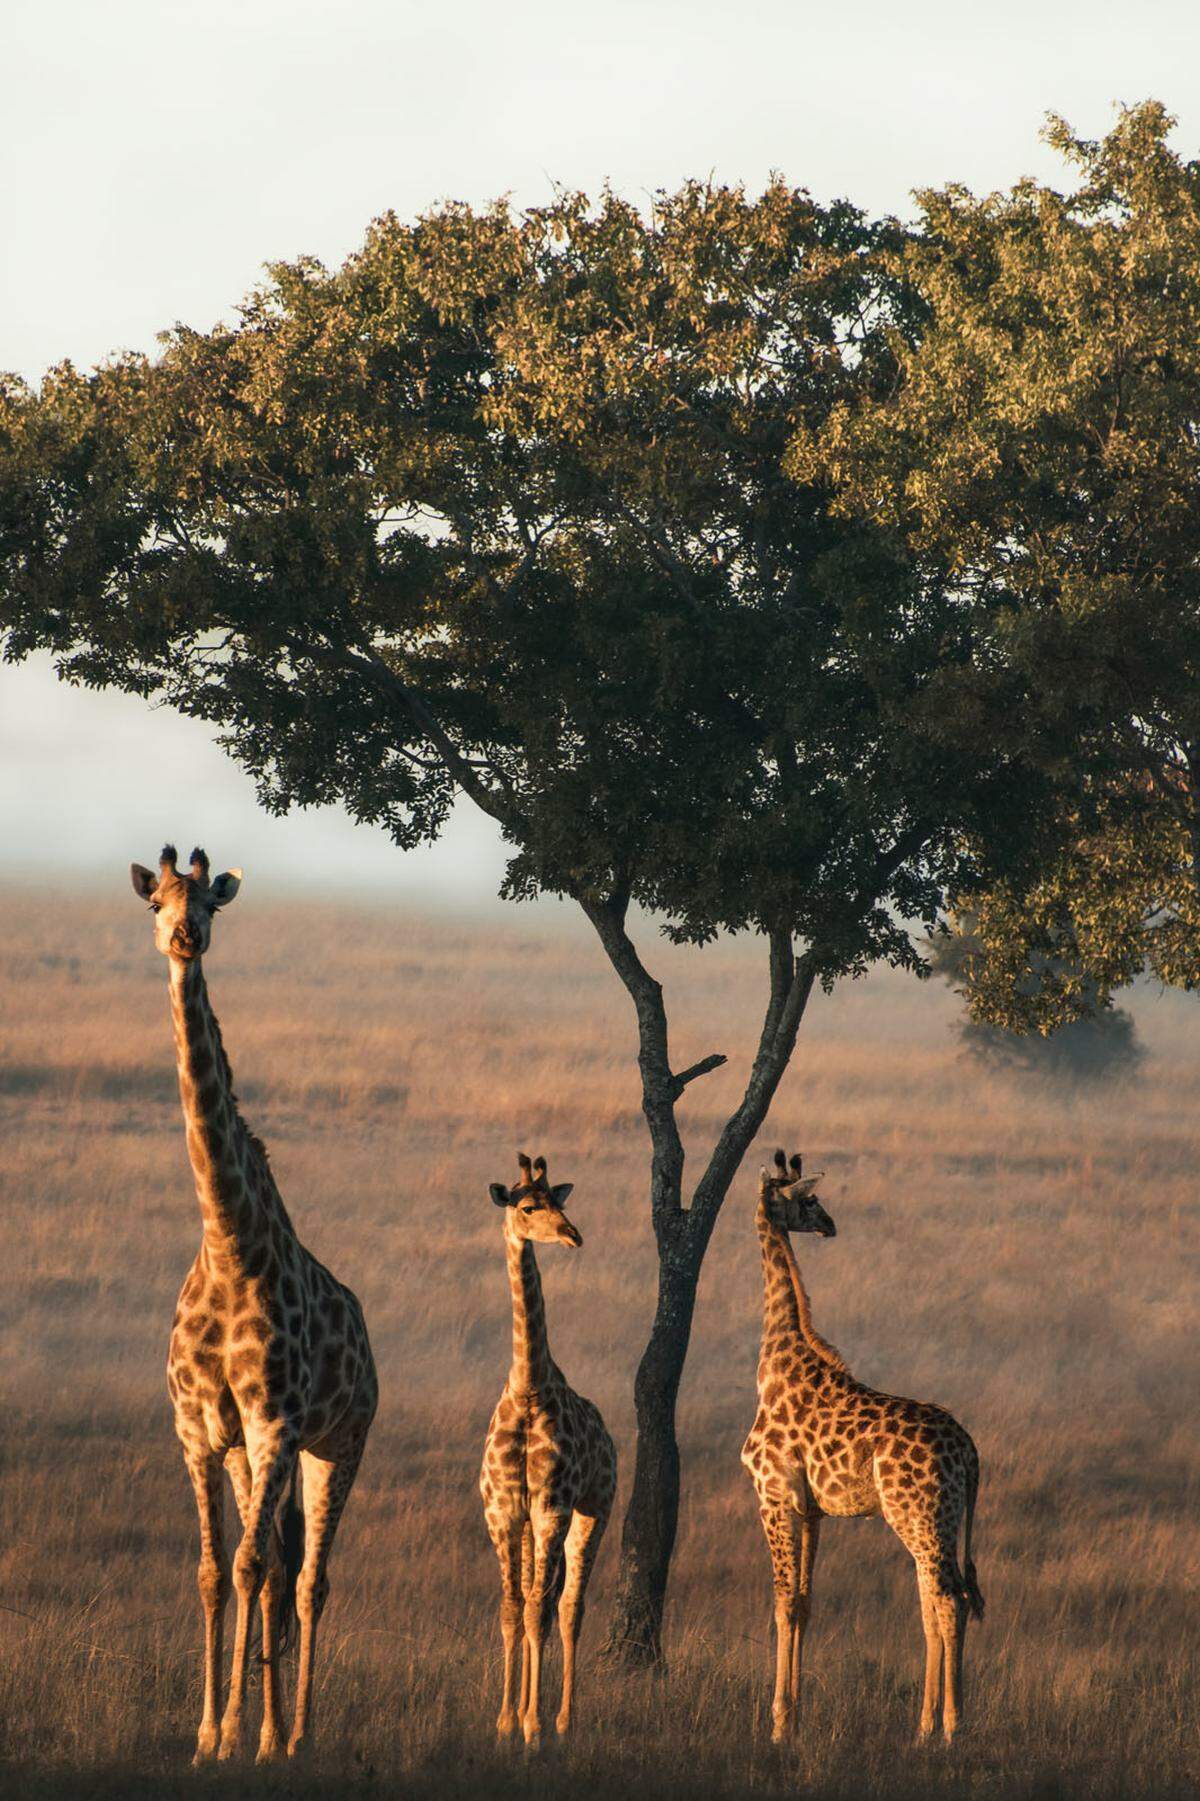 Das Fotografieren von Wildtieren könne eine Herausforderung sein, schreibt ein Teilnehmer aus England. "Die Unvorhersehbarkeit von Tieren macht es sowohl unglaublich frustrierend als auch äußerst reizvoll." Oft sehe er etwas Spektakuläres, aber beim Griff zur Kamera ist es wieder weg. "Zum Glück waren diese Giraffen so freundlich, lange genug stillzustehen, sodass ich diesen schönen Moment festhalten konnte."